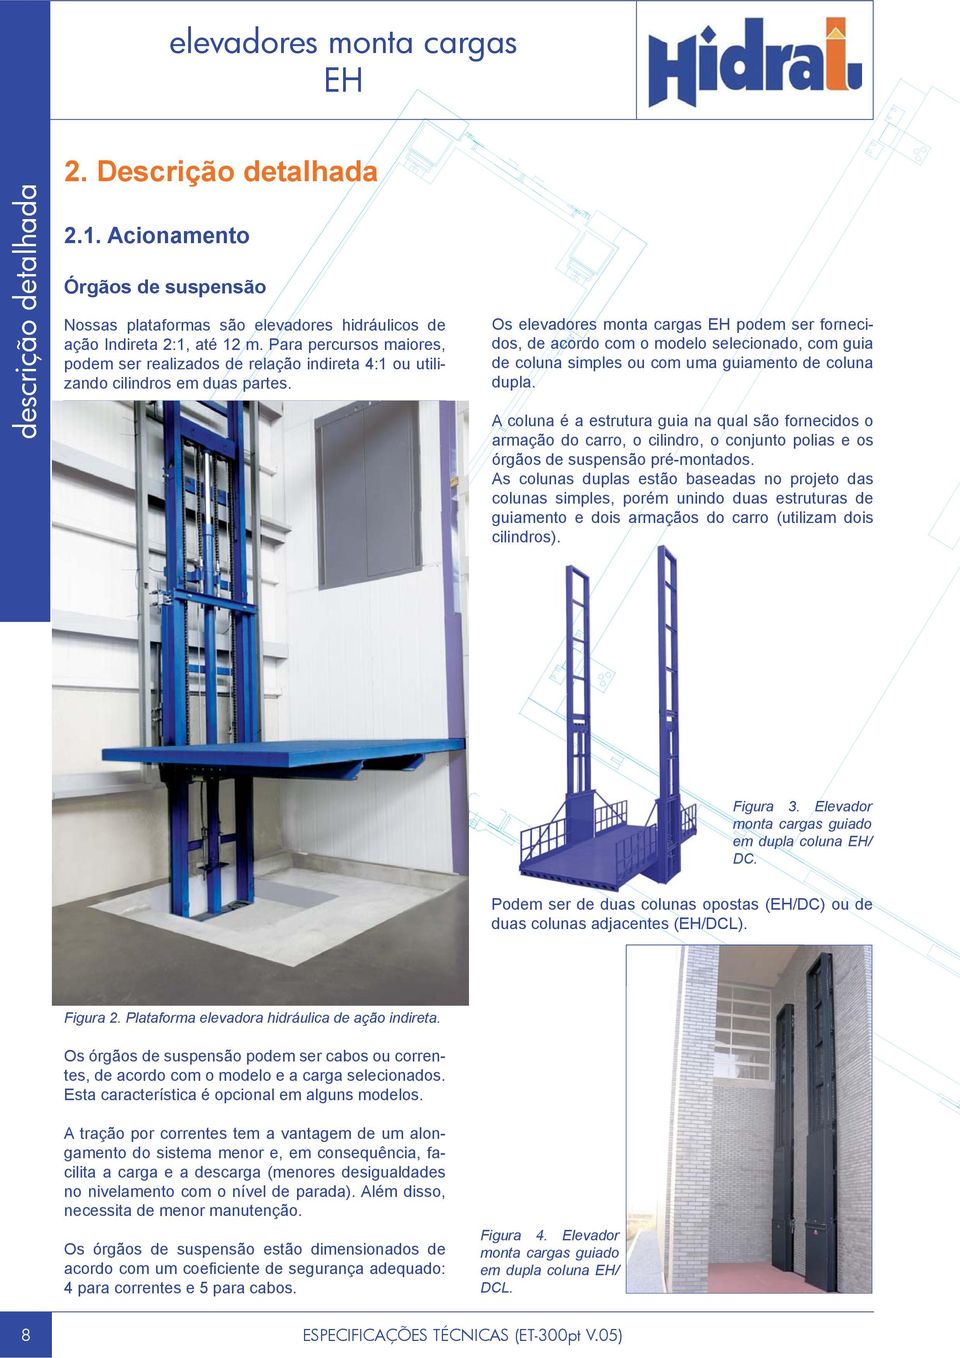 Os elevadores monta cargas podem ser fornecidos, de acordo com o modelo selecionado, com guia de coluna simples ou com uma guiamento de coluna dupla.